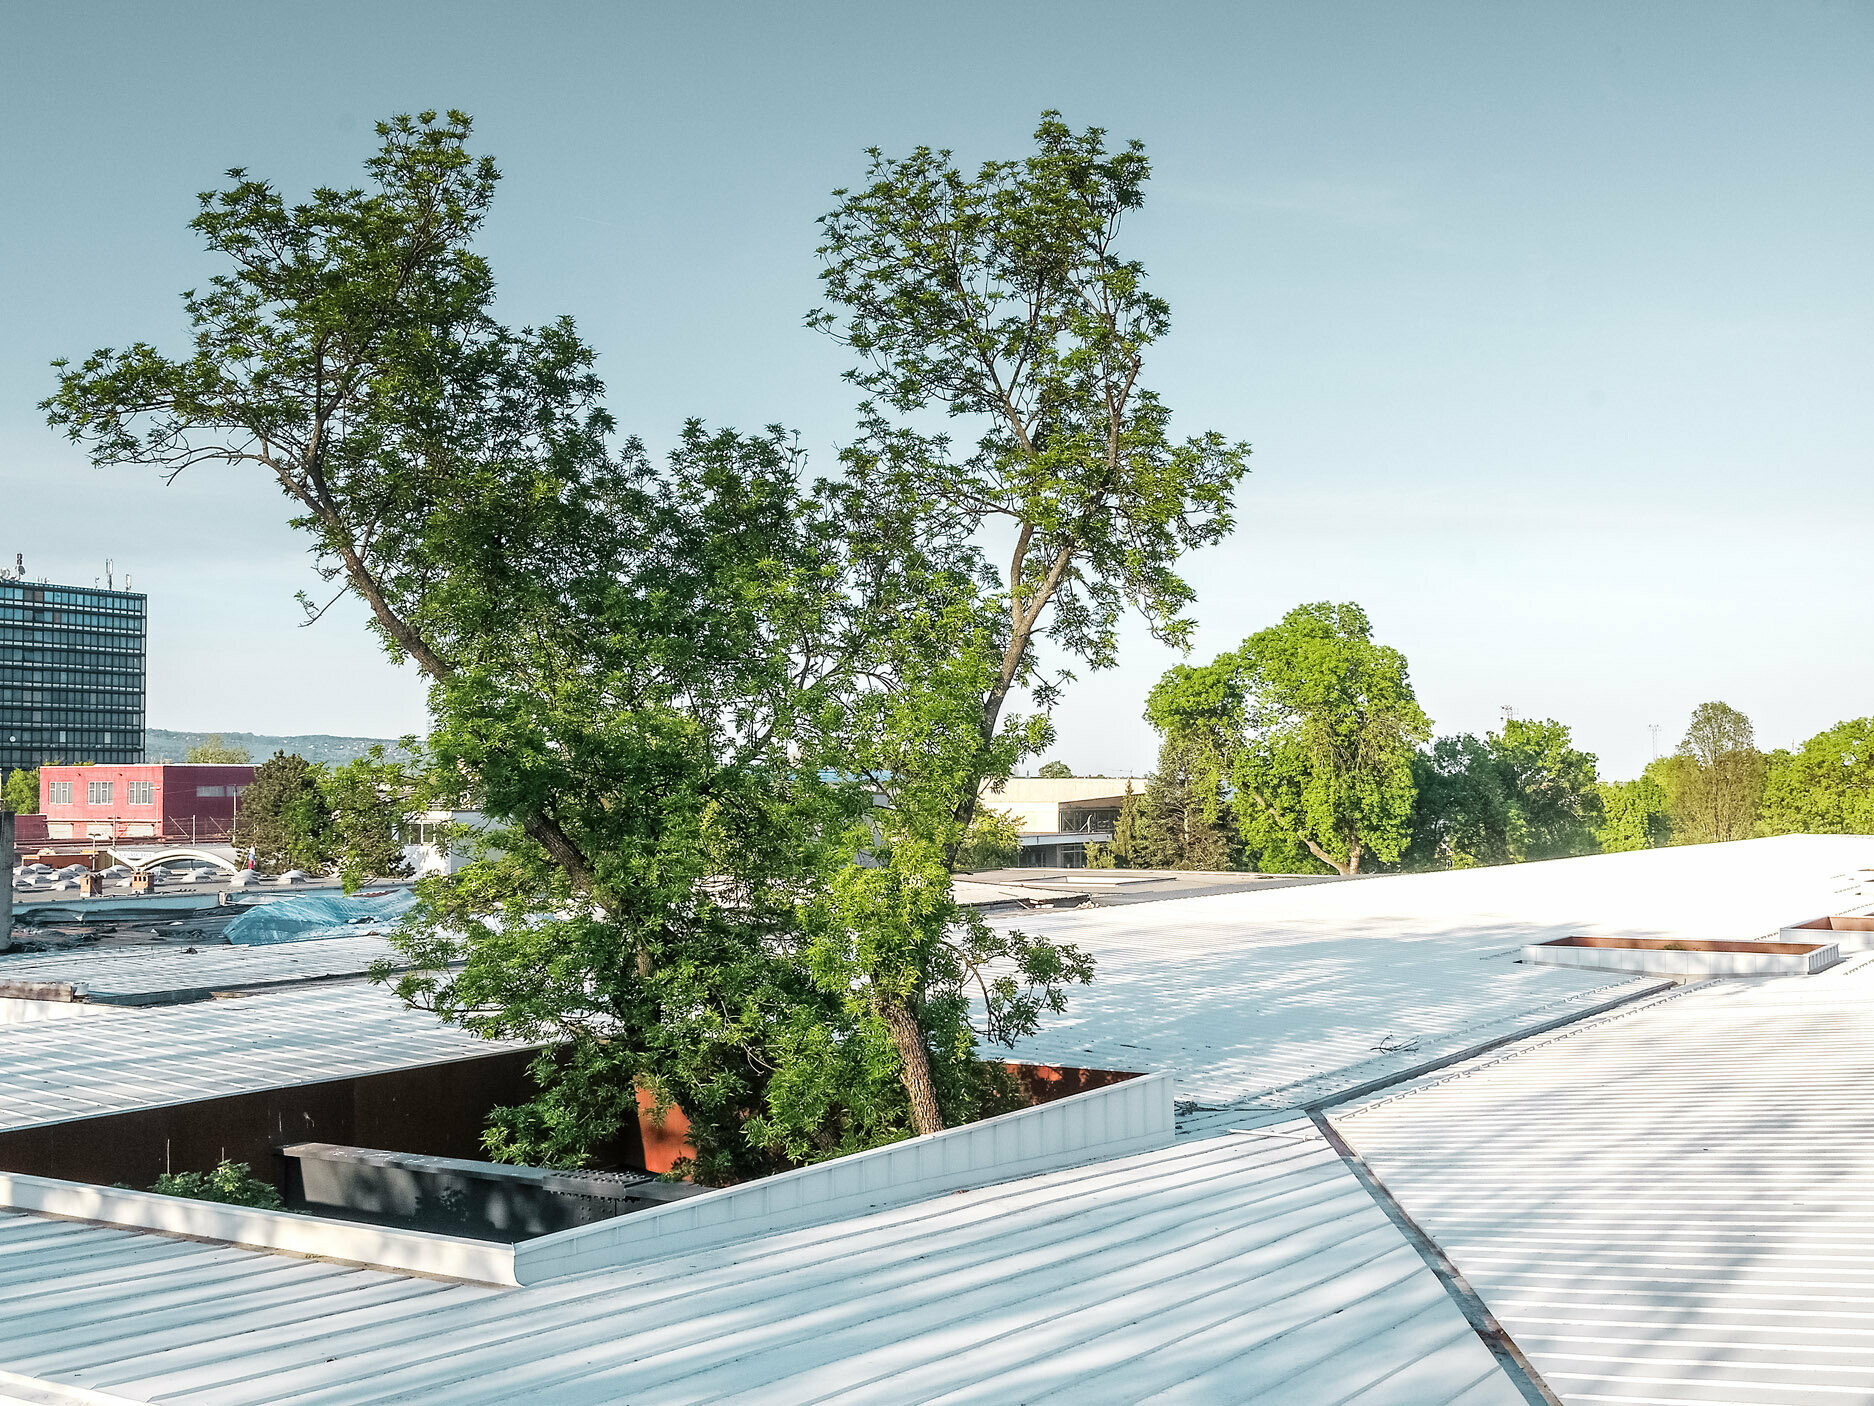 Na slici se nalazi autobusna postaja u Hrvatskoj s bijelim Prefalz krovom tvrtke PREFA. Visoka stabla prekidaju krov na više mjesta, što konstrukciji daje posebne arhitektonske karakteristike. U pozadini se mogu vidjeti druge građevine i visoka poslovna zgrada. Slika prikazuje spoj funkcionalne arhitekture i prirodnog okruženja, pri čemu bijeli krov i zelenilo drveća stvaraju upadljiv kontrast.